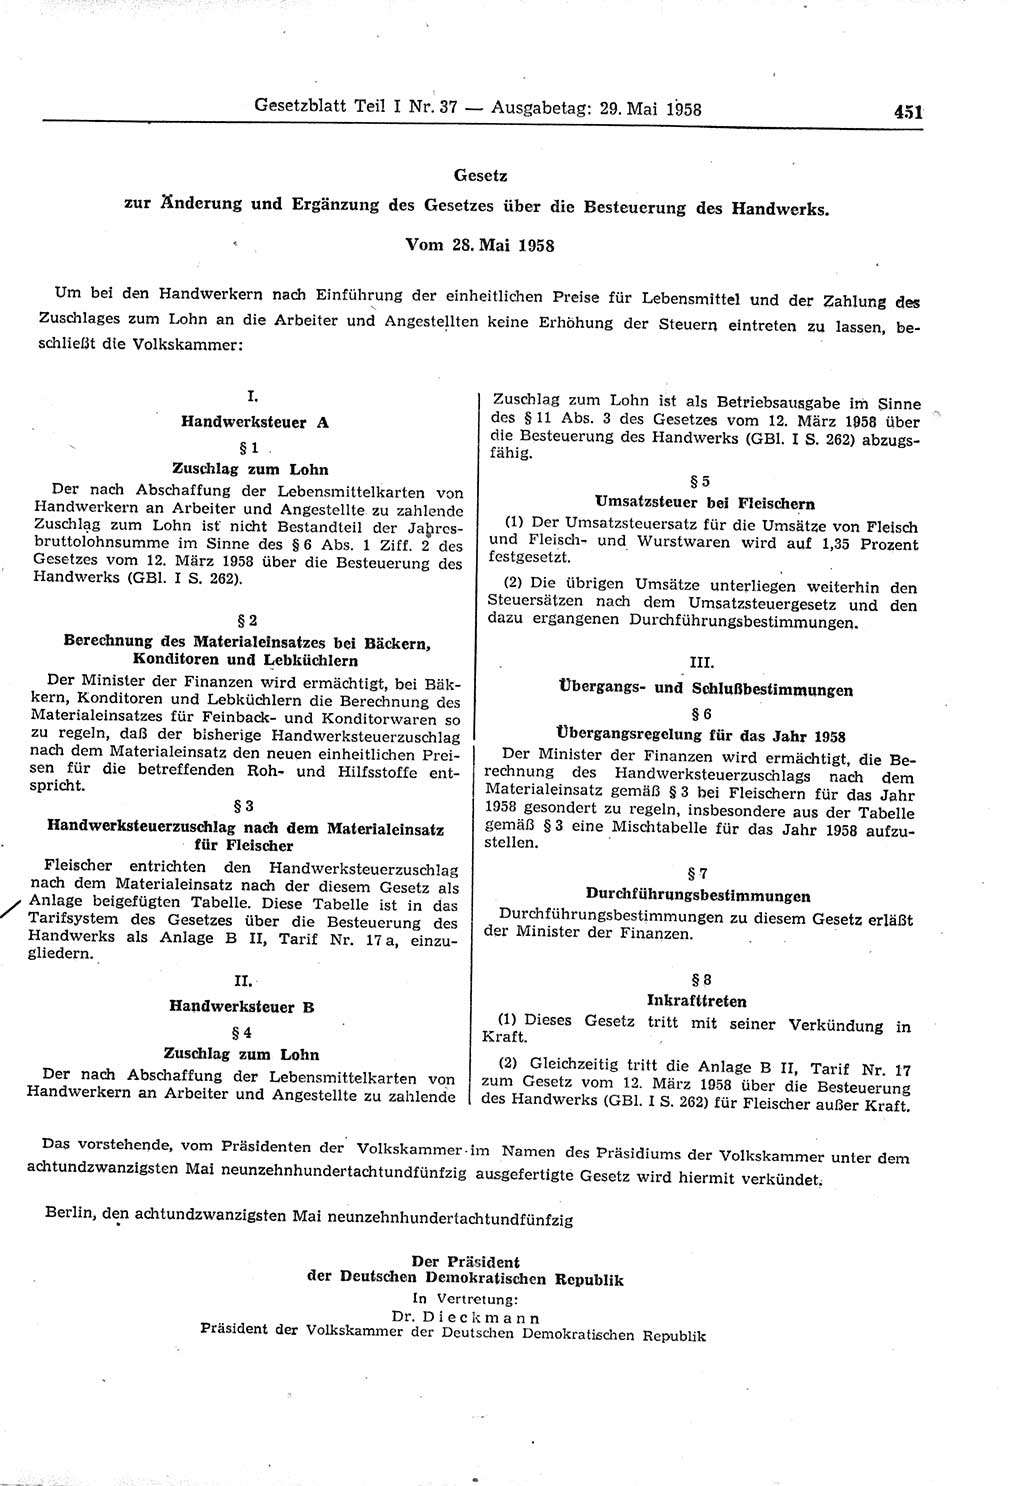 Gesetzblatt (GBl.) der Deutschen Demokratischen Republik (DDR) Teil Ⅰ 1958, Seite 451 (GBl. DDR Ⅰ 1958, S. 451)